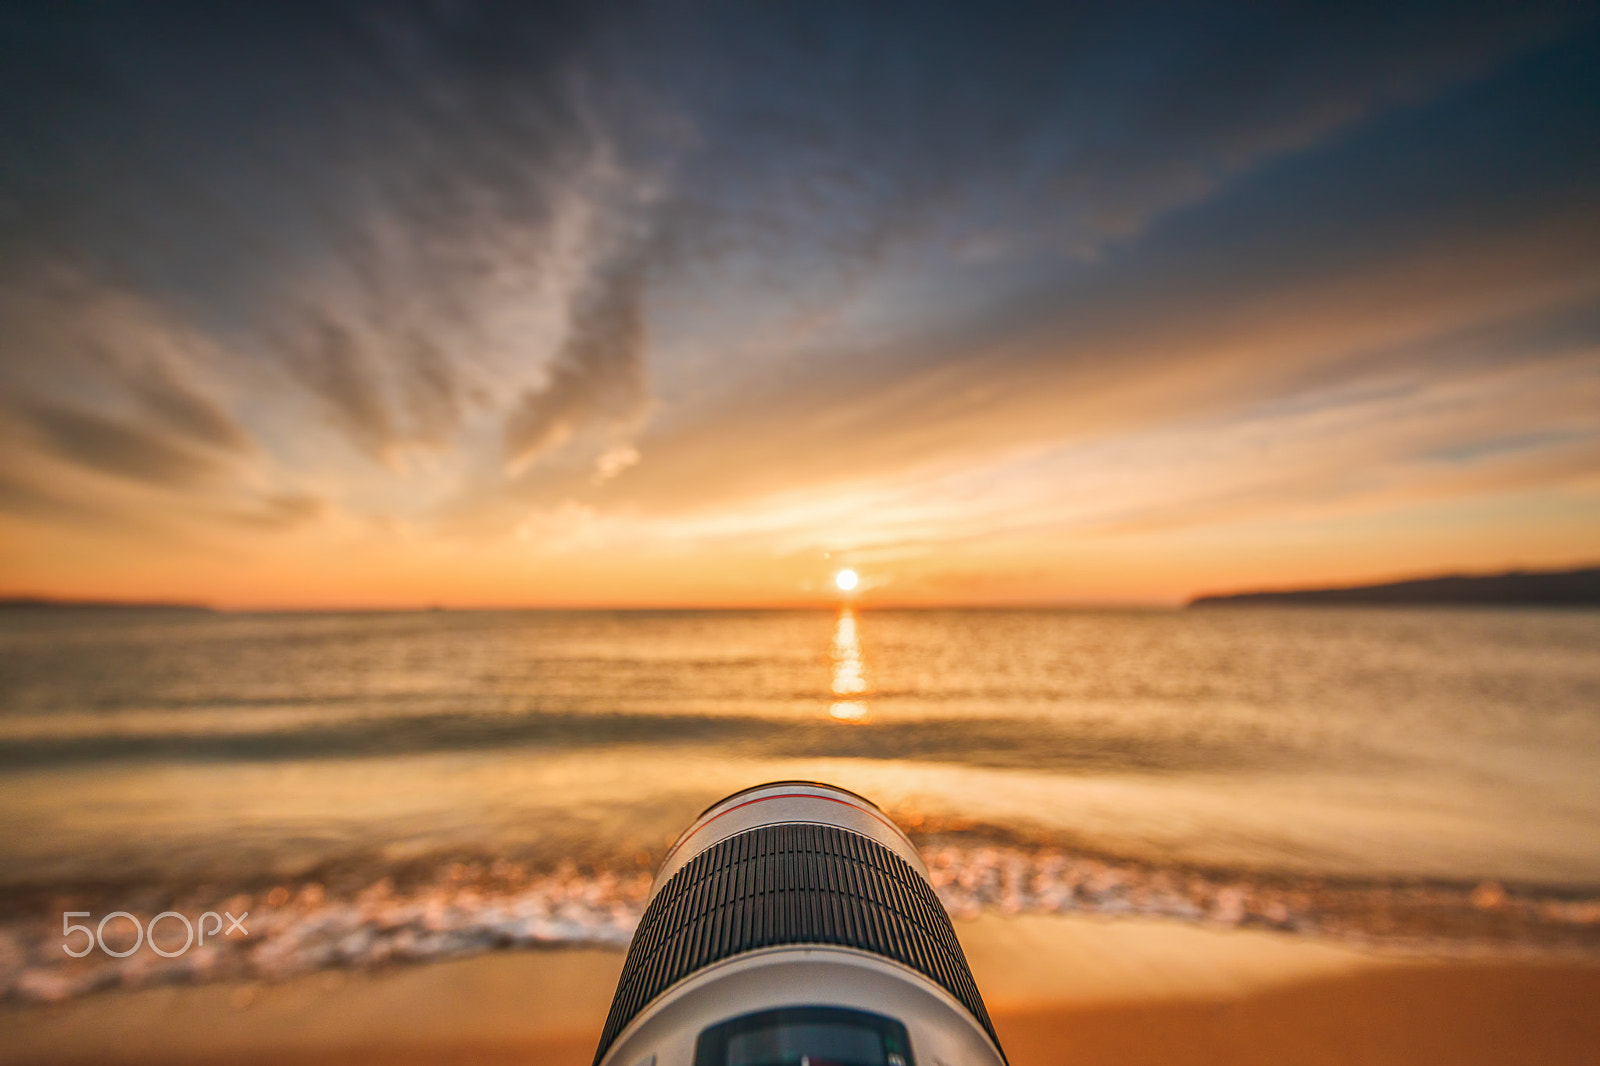 Canon EOS 5D Mark IV + Canon EF 11-24mm F4L USM sample photo. Sunrise on the beach photography